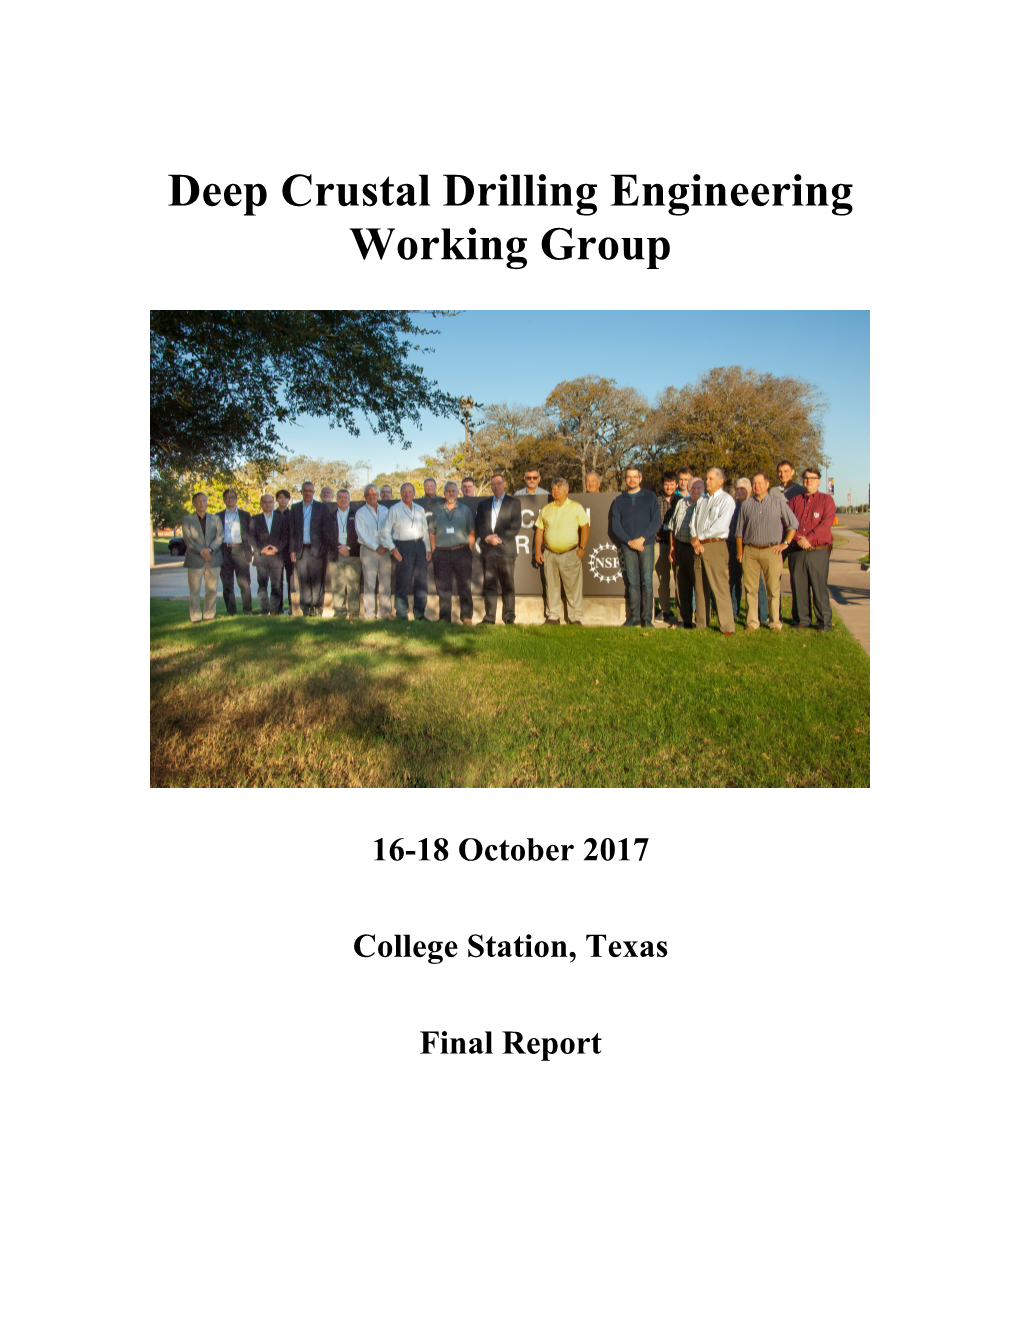 2017 Deep Crustal Drilling Engineering Working Group